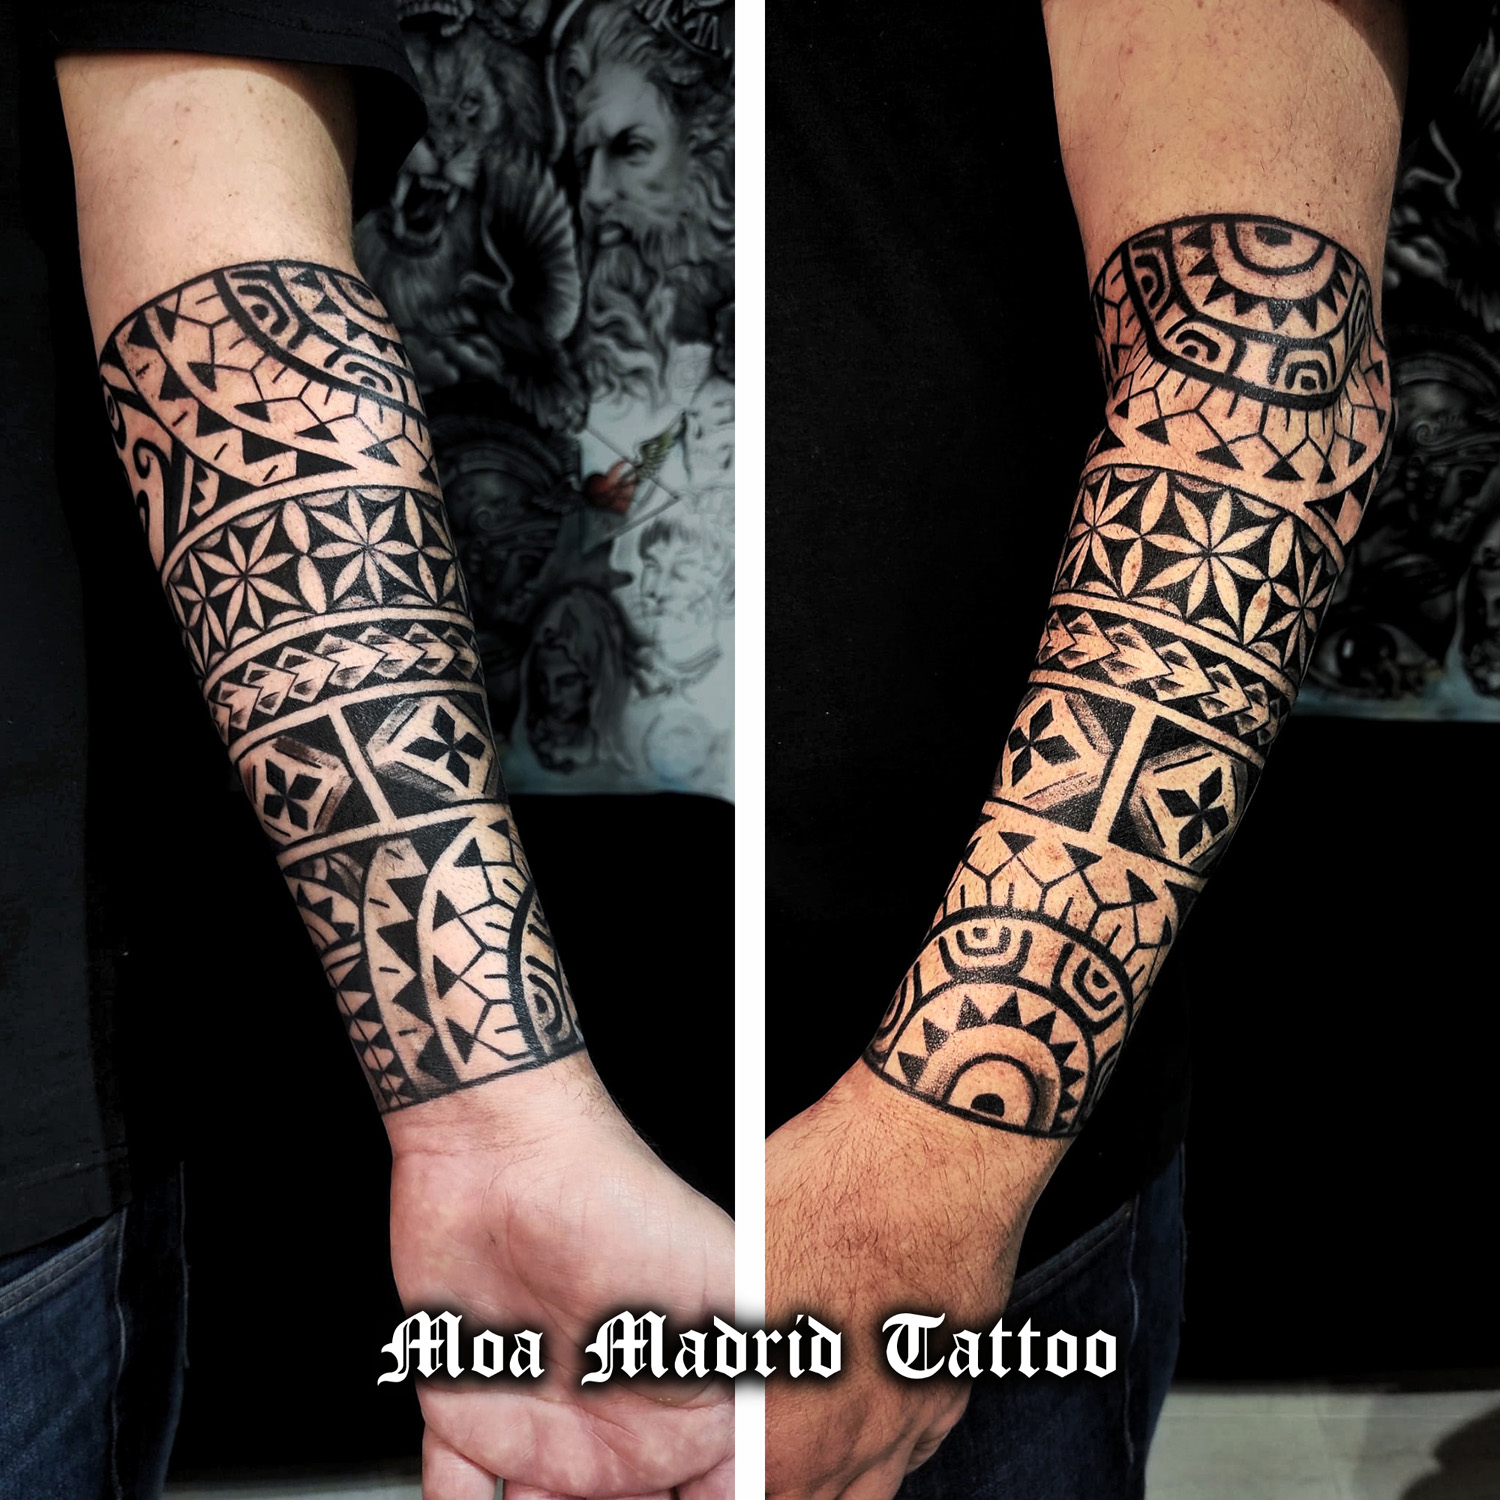 Moderno tattoo fusión de estilos samoano y geométrico